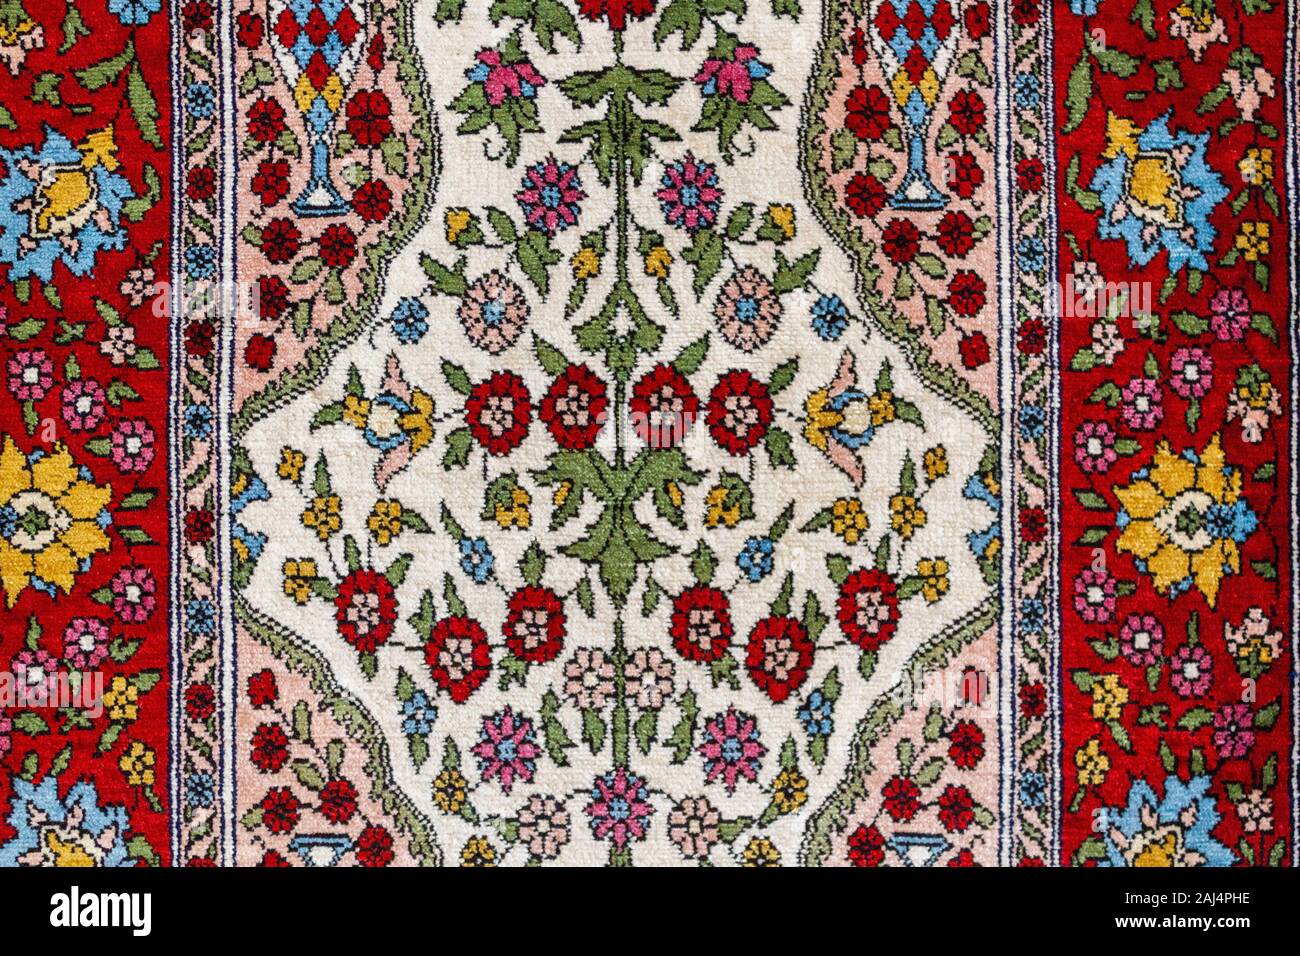 Seide Teppich Teppich Muster. Die traditionellen osmanischen und türkischen Seidenteppich Textur. Türkischen osmanischen Oriental folk Carpet Design Stockfoto